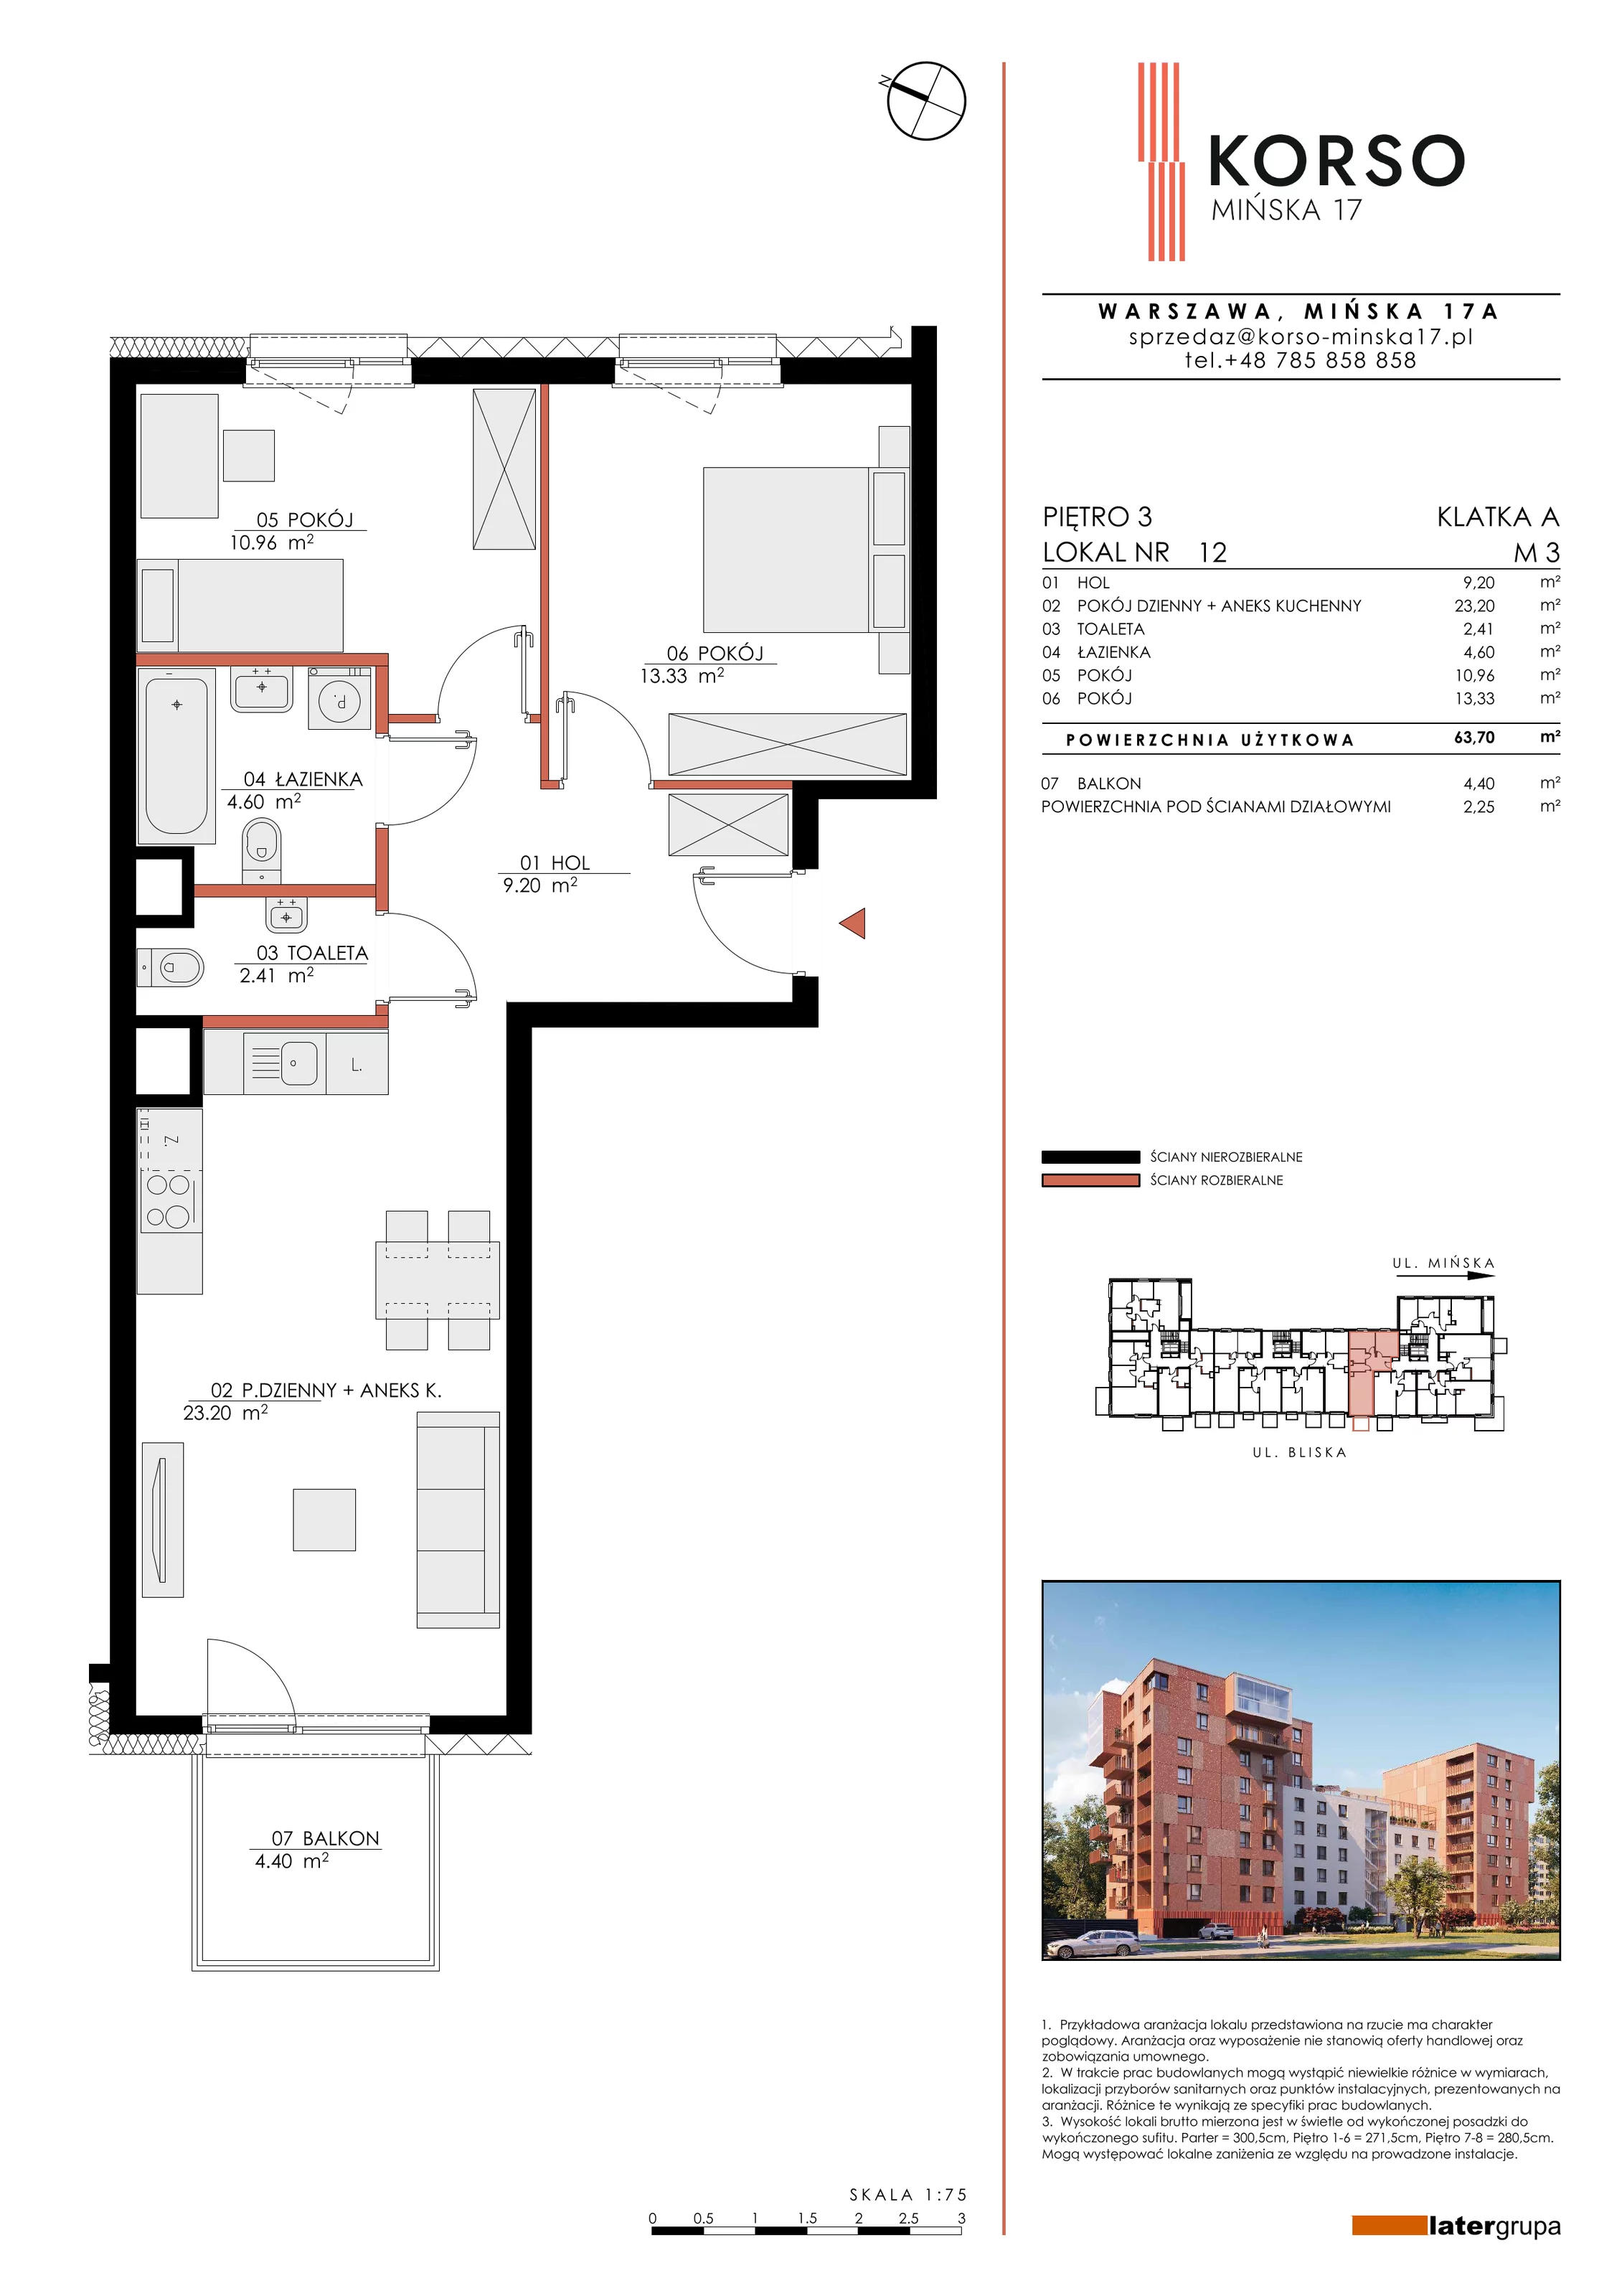 Mieszkanie 63,70 m², piętro 3, oferta nr 12, KORSO Mińska 17, Warszawa, Praga Południe, Kamionek, ul. Mińska 17